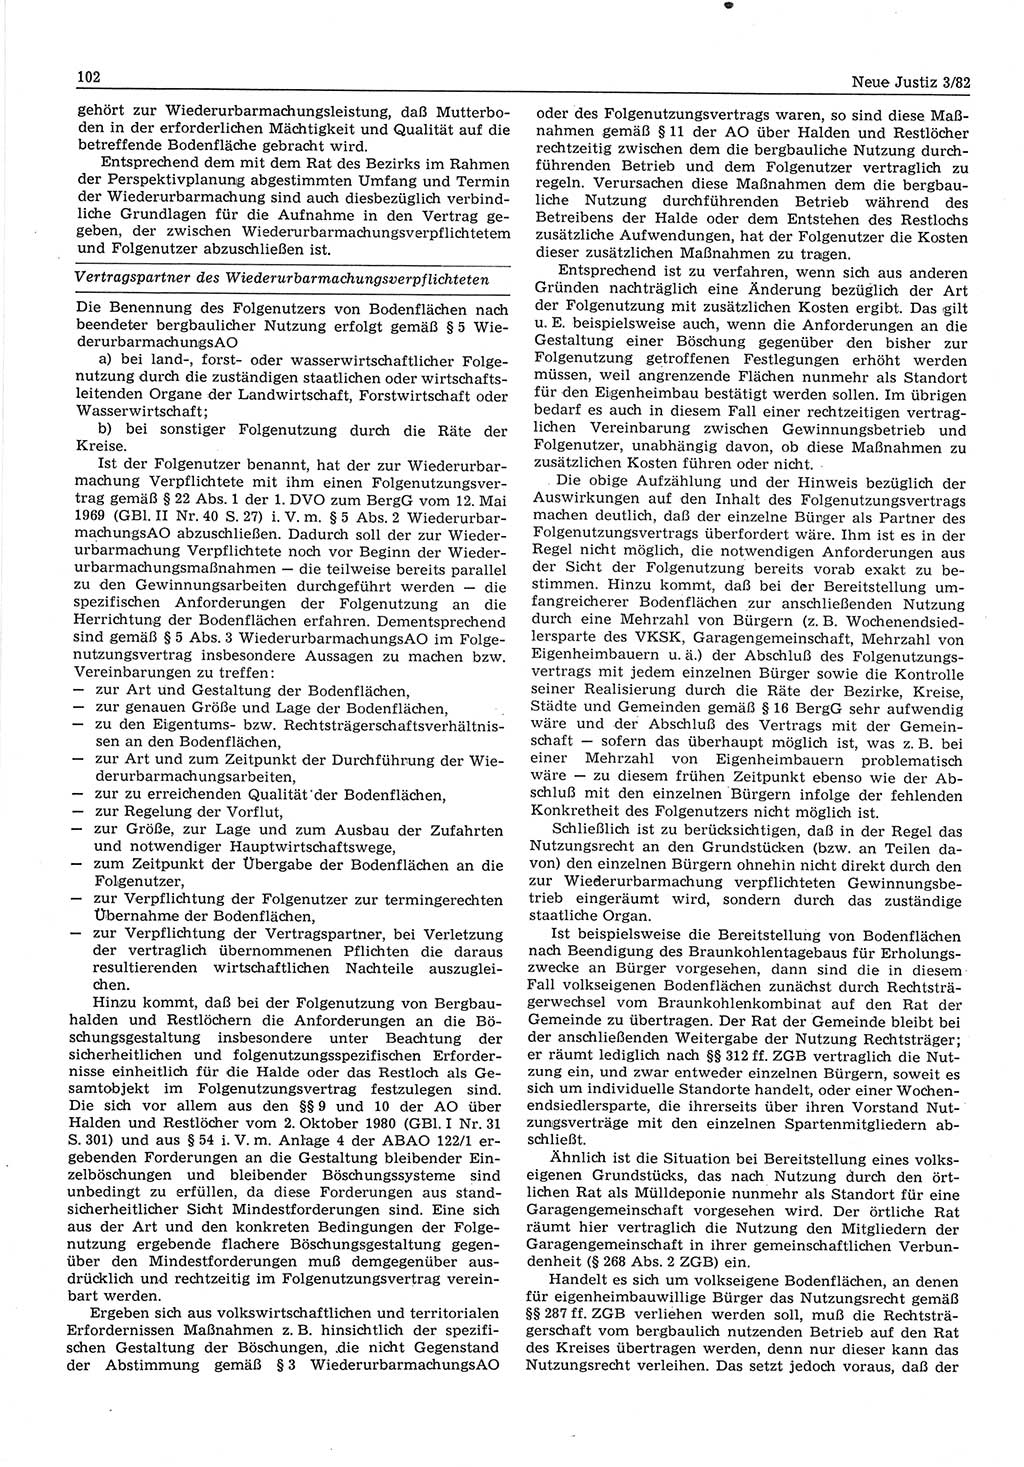 Neue Justiz (NJ), Zeitschrift für sozialistisches Recht und Gesetzlichkeit [Deutsche Demokratische Republik (DDR)], 36. Jahrgang 1982, Seite 102 (NJ DDR 1982, S. 102)